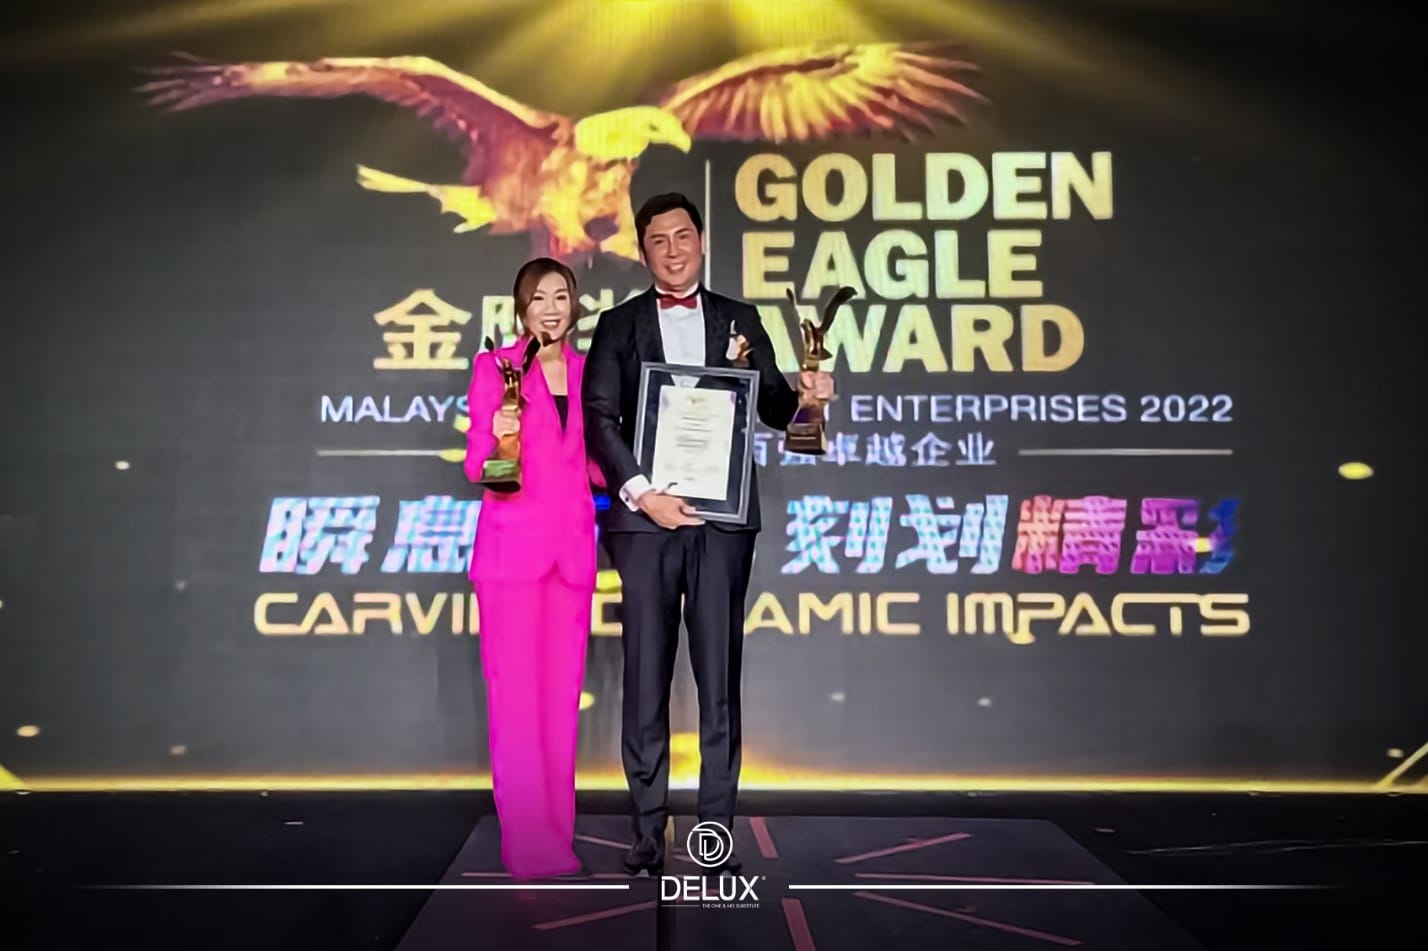 Golden Eagle Award, Delux